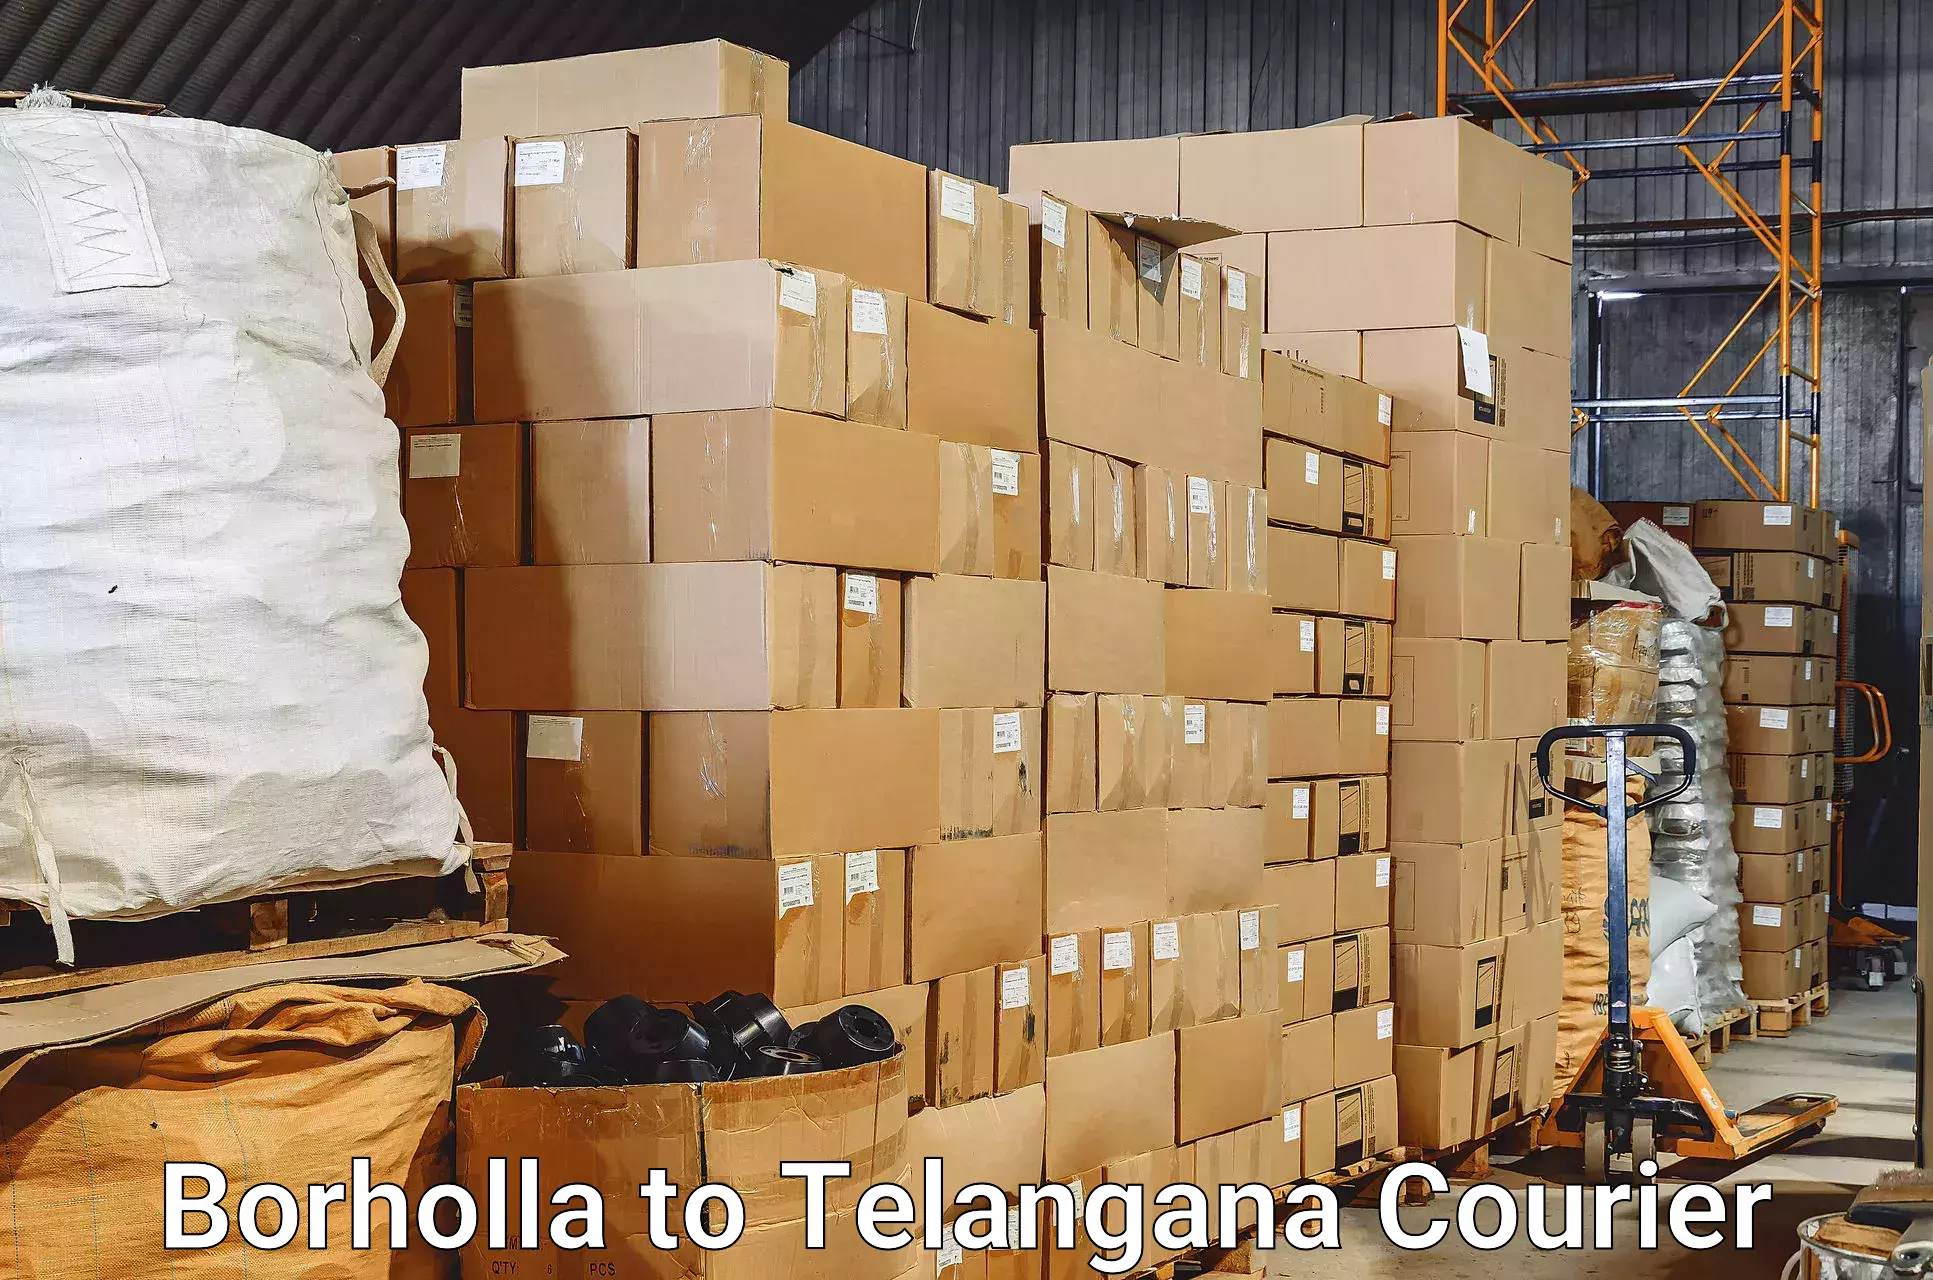 Baggage delivery estimate Borholla to Sikanderguda